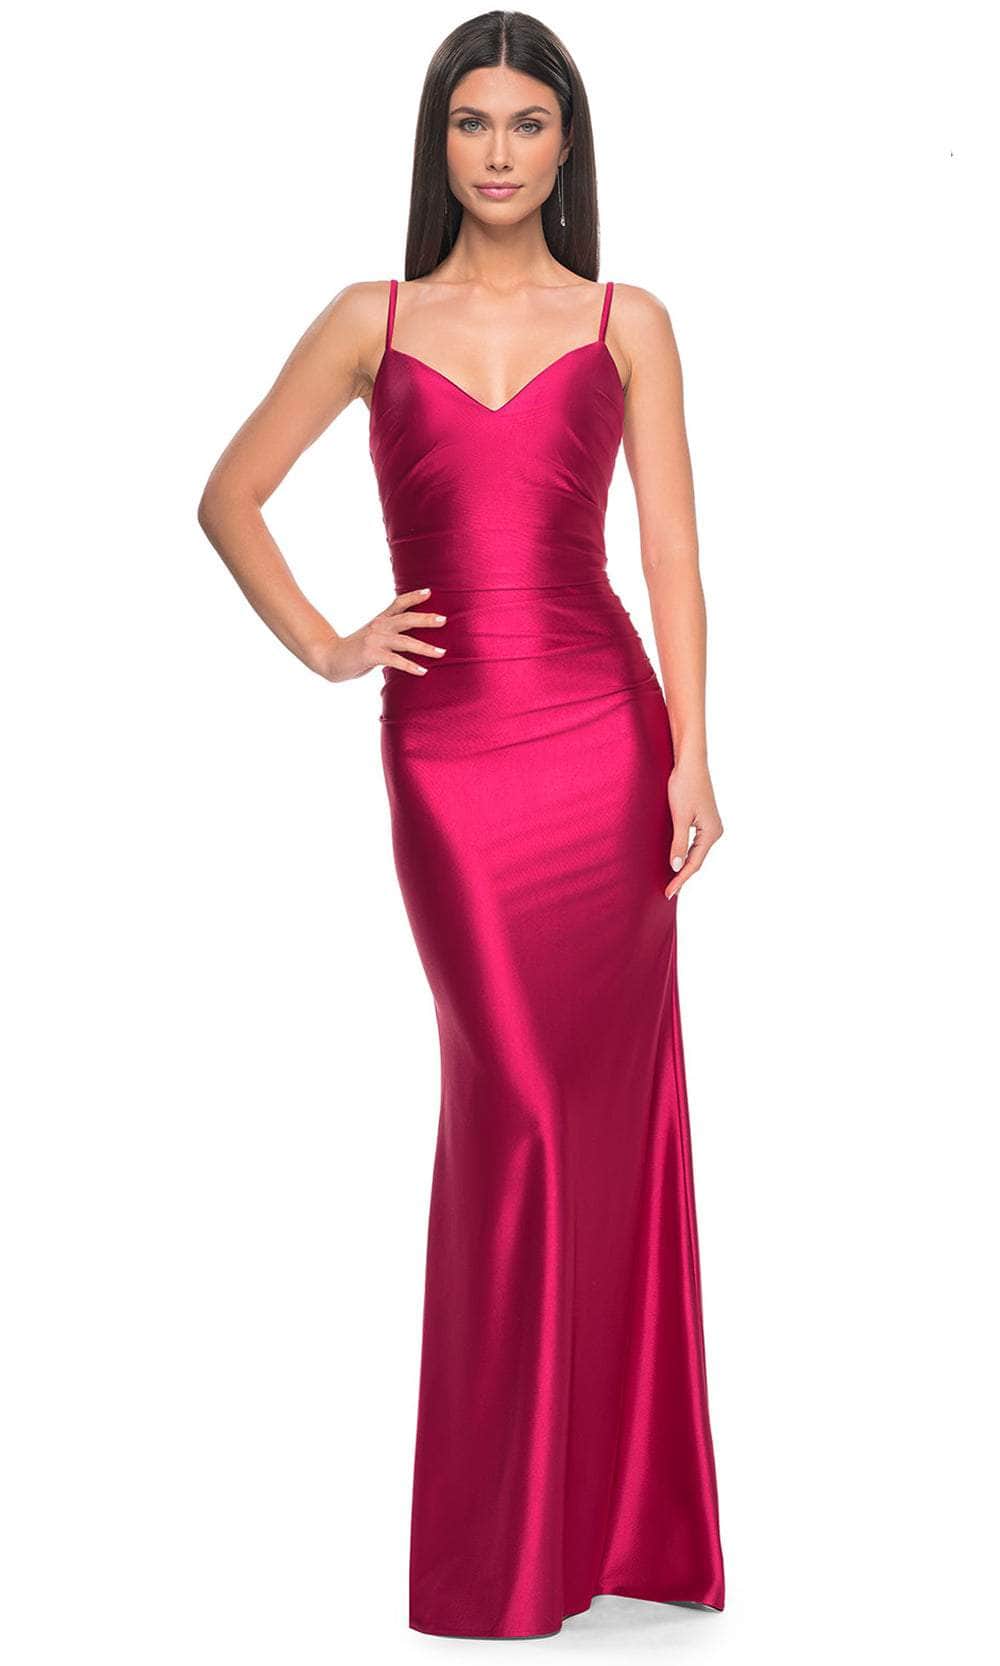 La Femme 32075 - Spaghetti Strap Satin Prom Dress Special Occasion Dresses